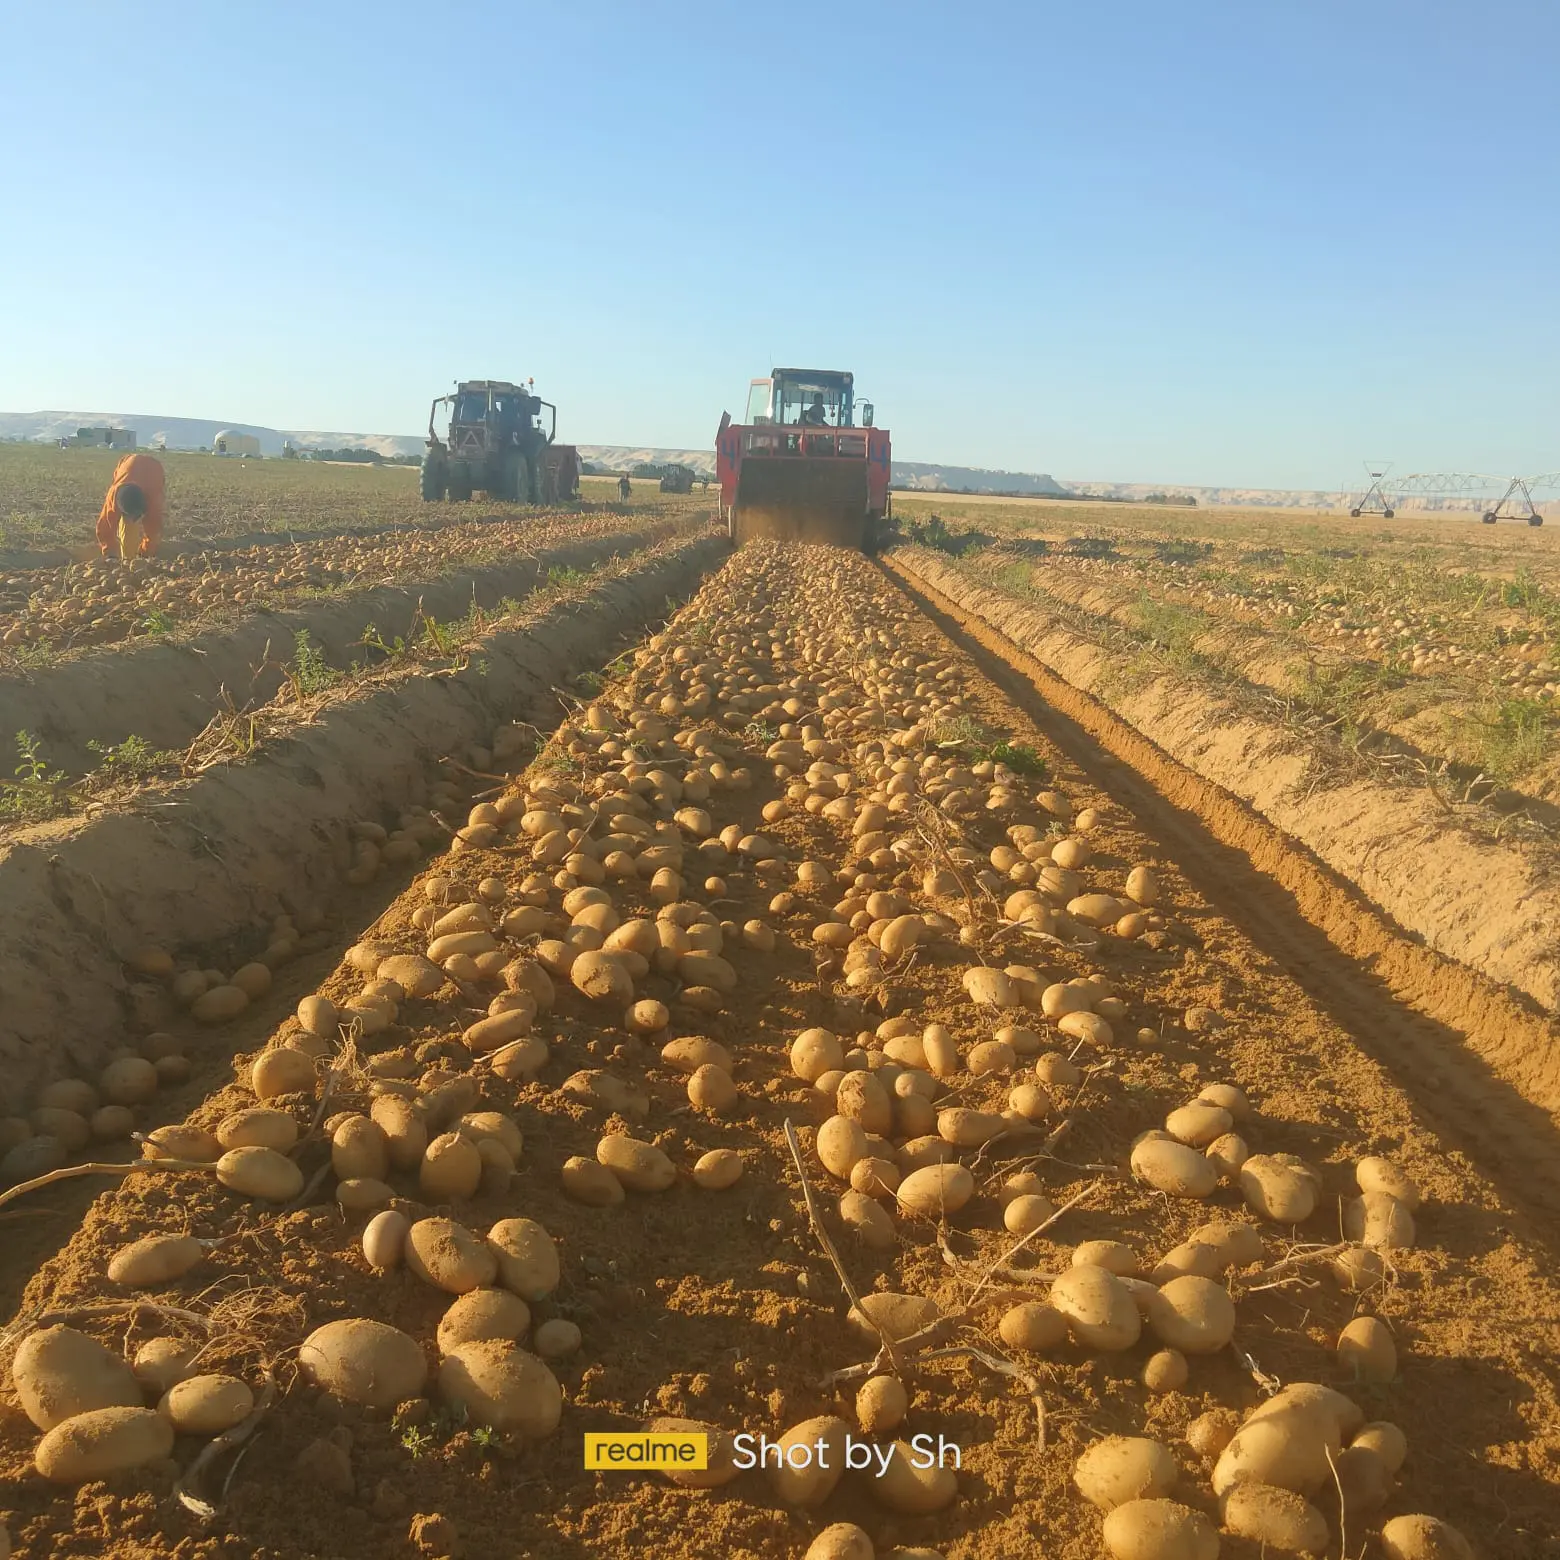 "الزراعة" تكشف عن أبرز أنشطة مشروع مكافحة وحصر العفن البني في البطاطس